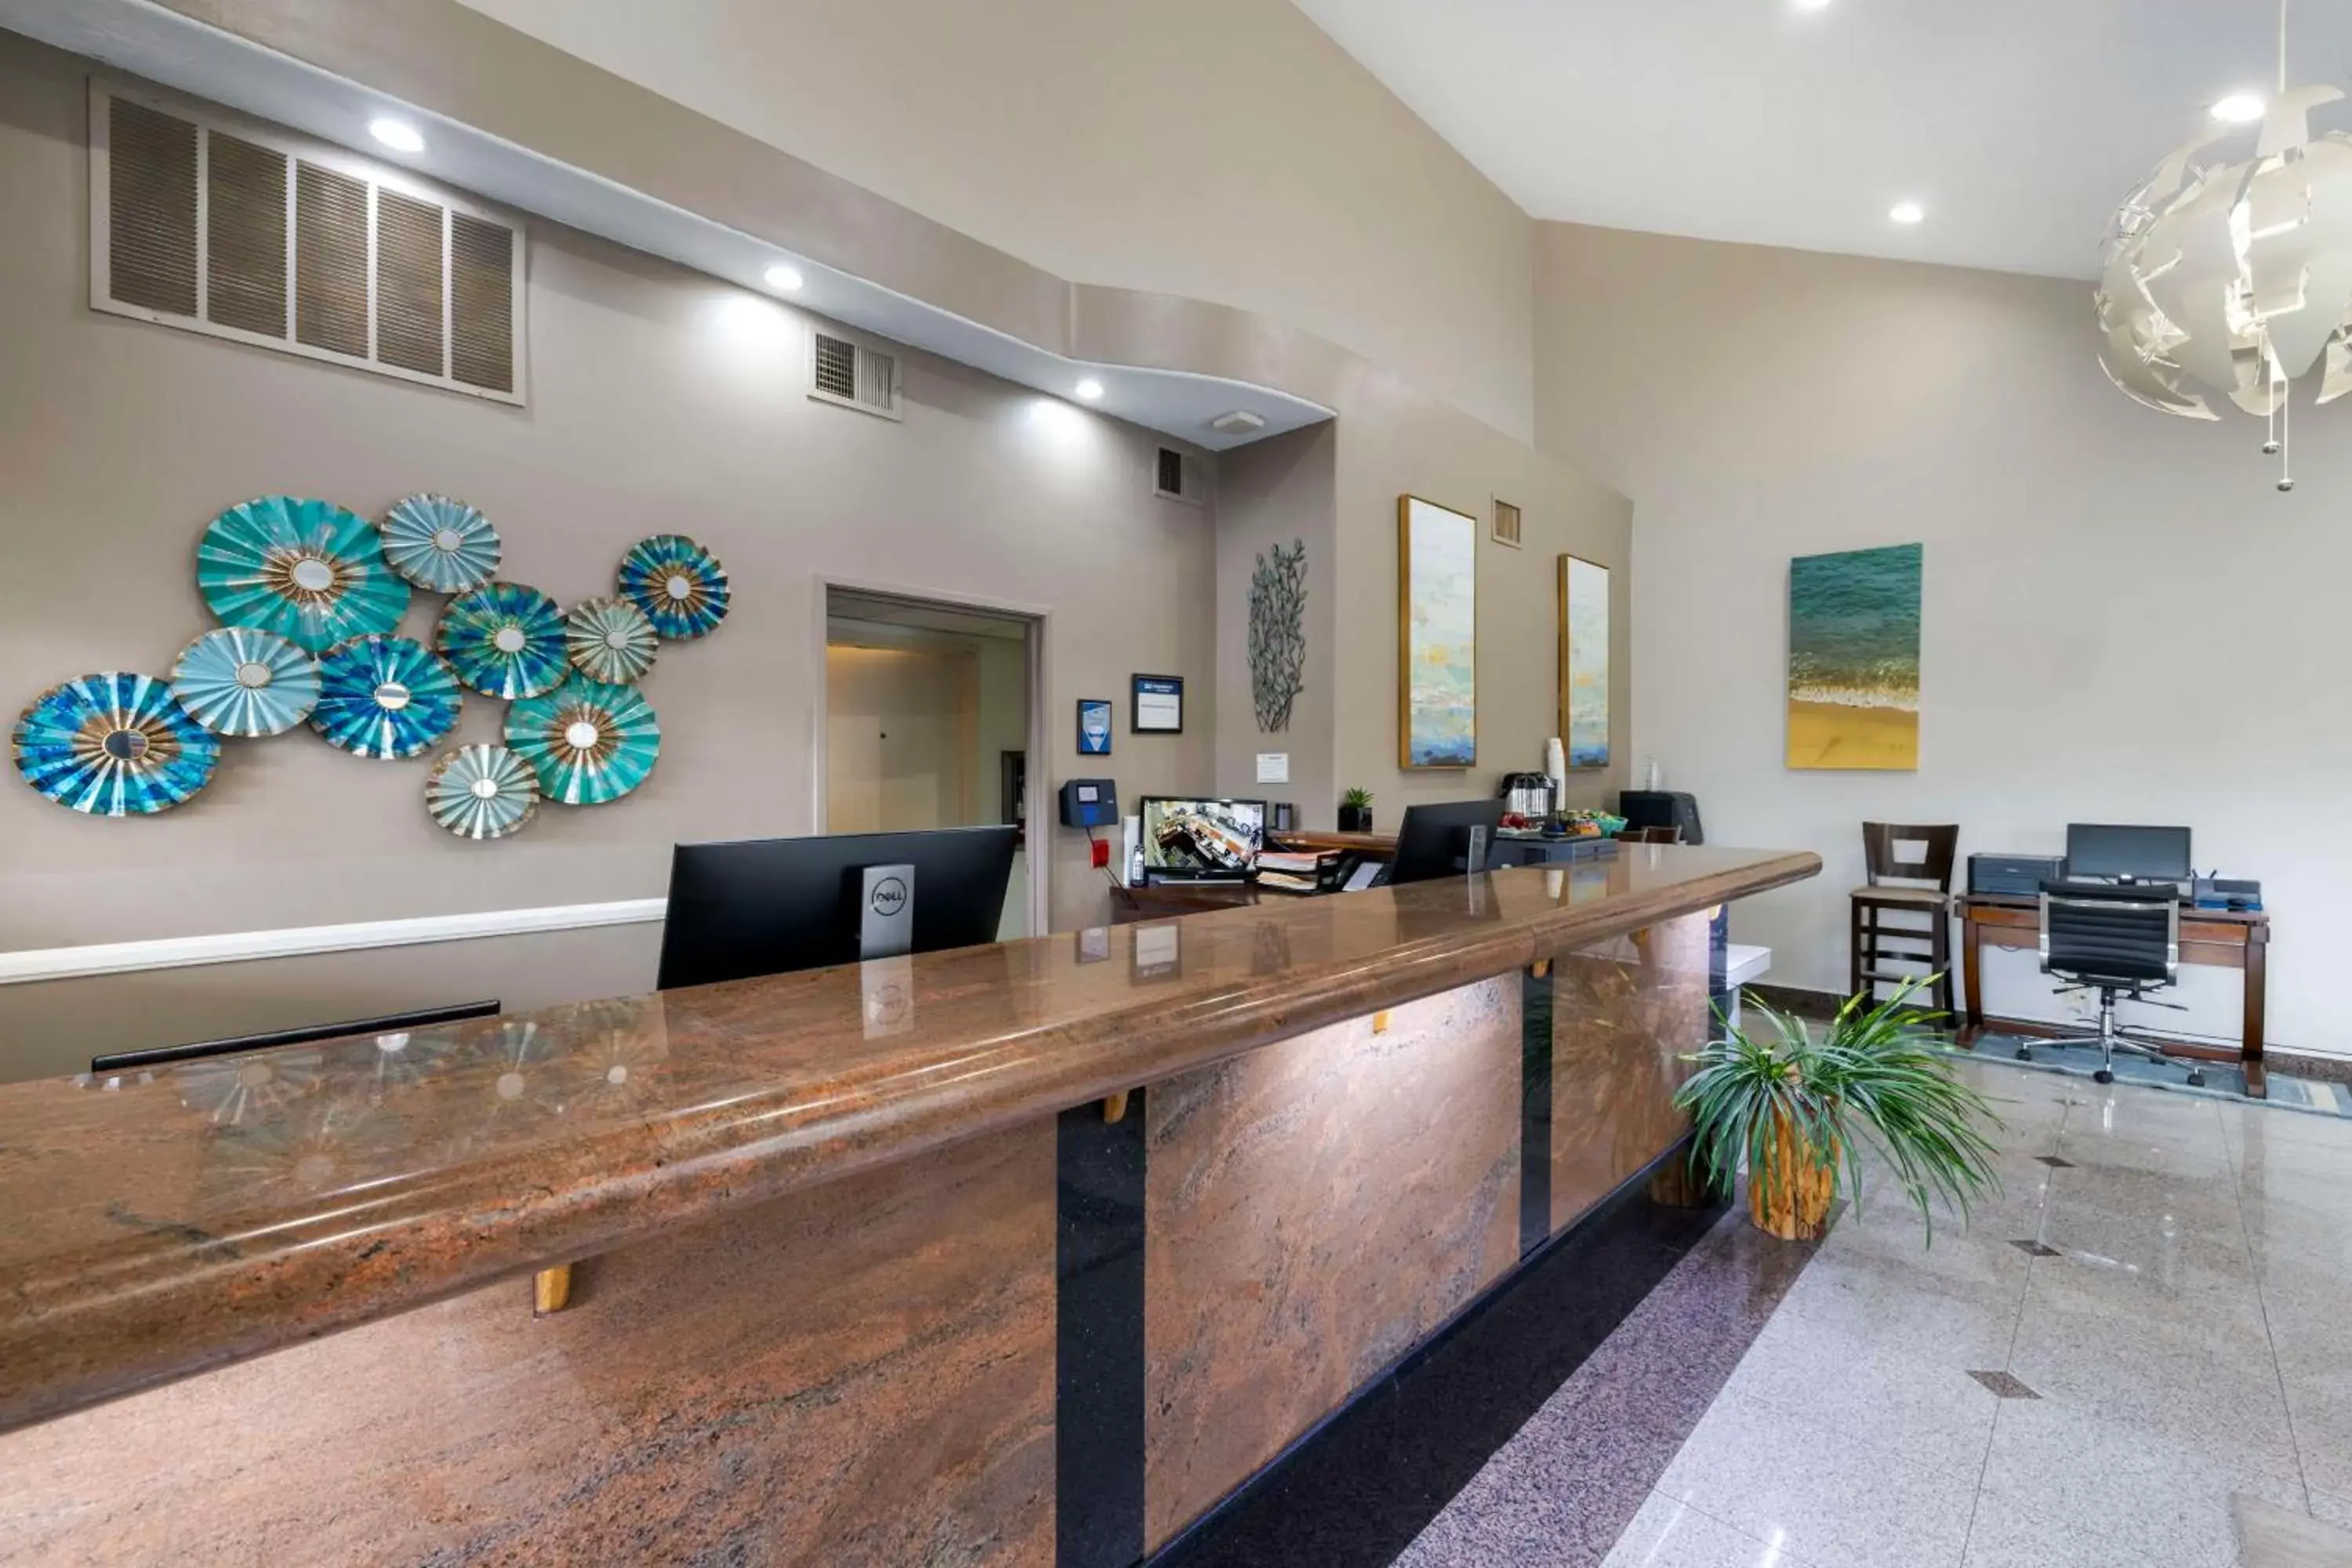 Lobby or reception, Lobby/Reception in Best Western Redondo Beach Galleria Inn Hotel - Beach City LA